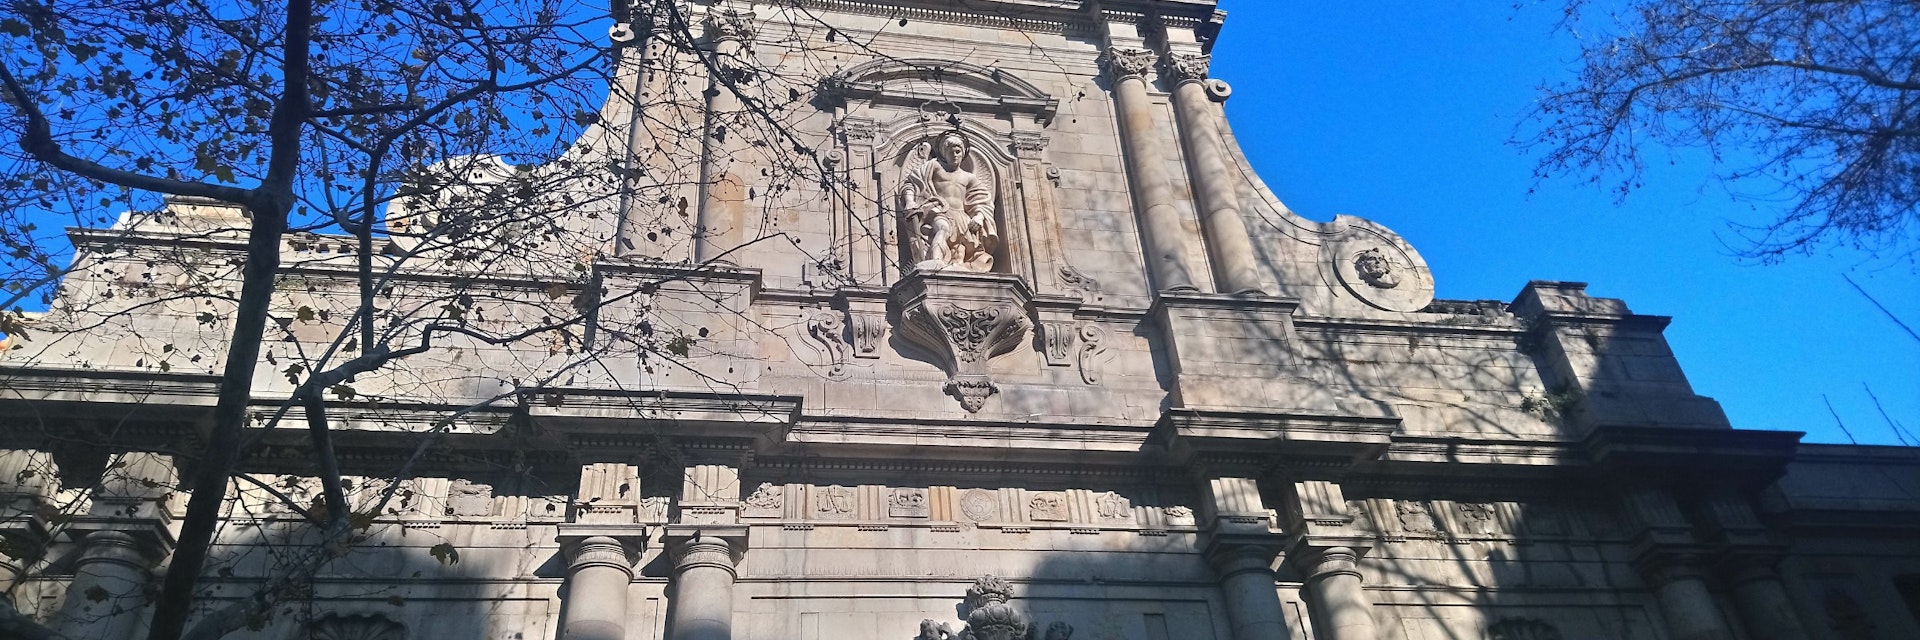 Facade of Església de Sant Miquel del Port